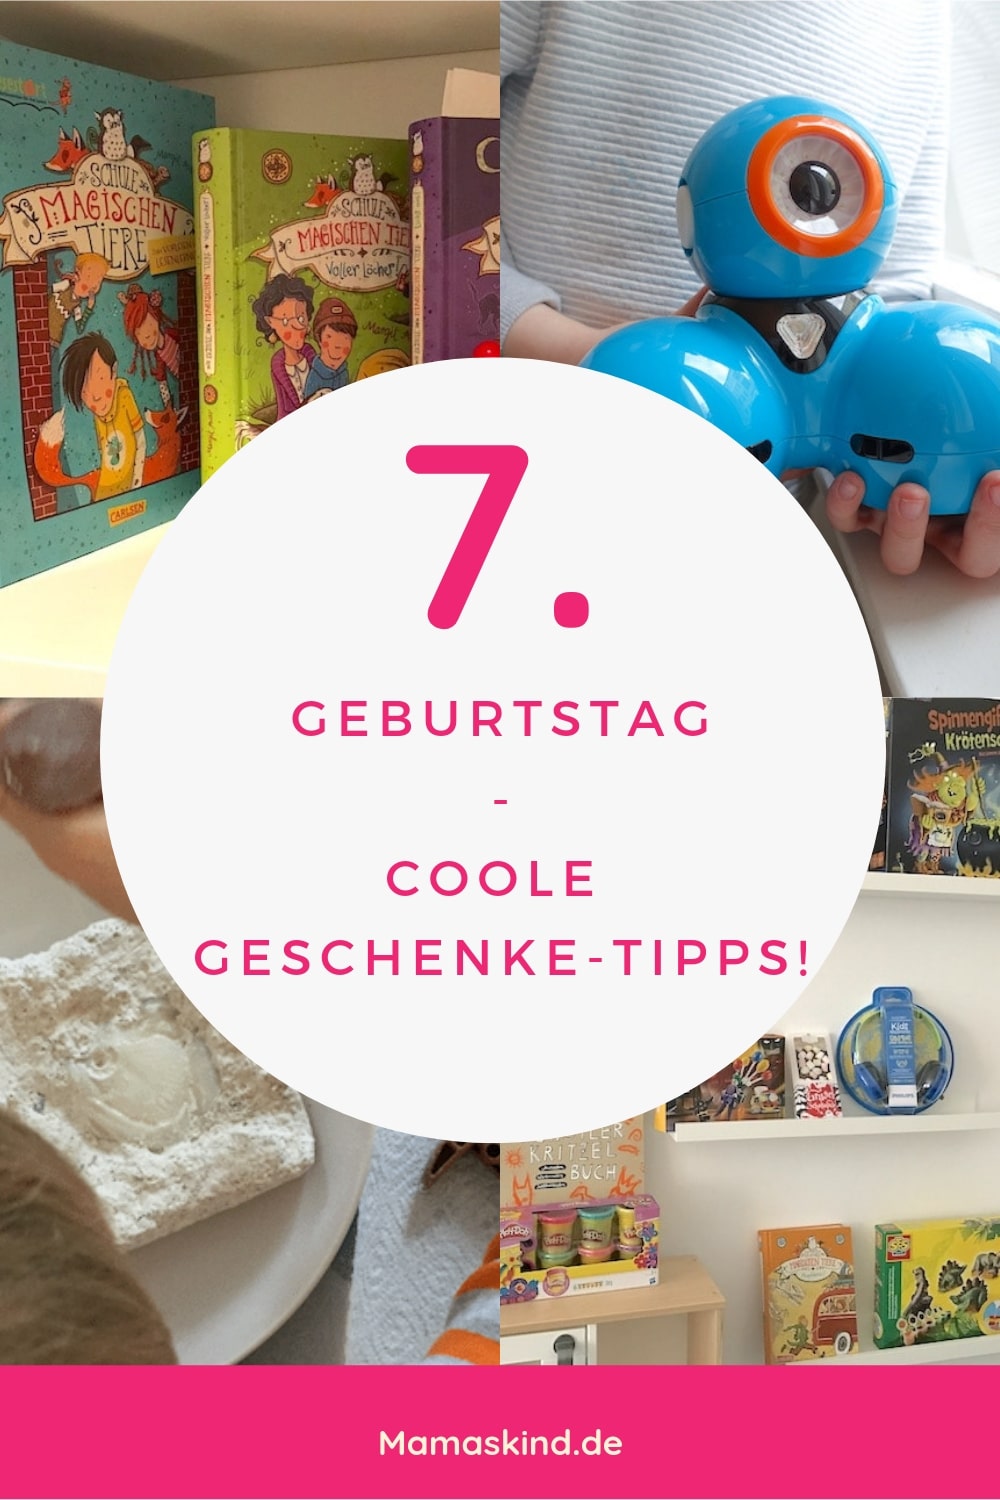 Geschenke-Tipps zum 7. Geburtstag | Was kann ich meinem Kind zum Geburtstag schenken? | Mehr Infos auf Mamaskind.de